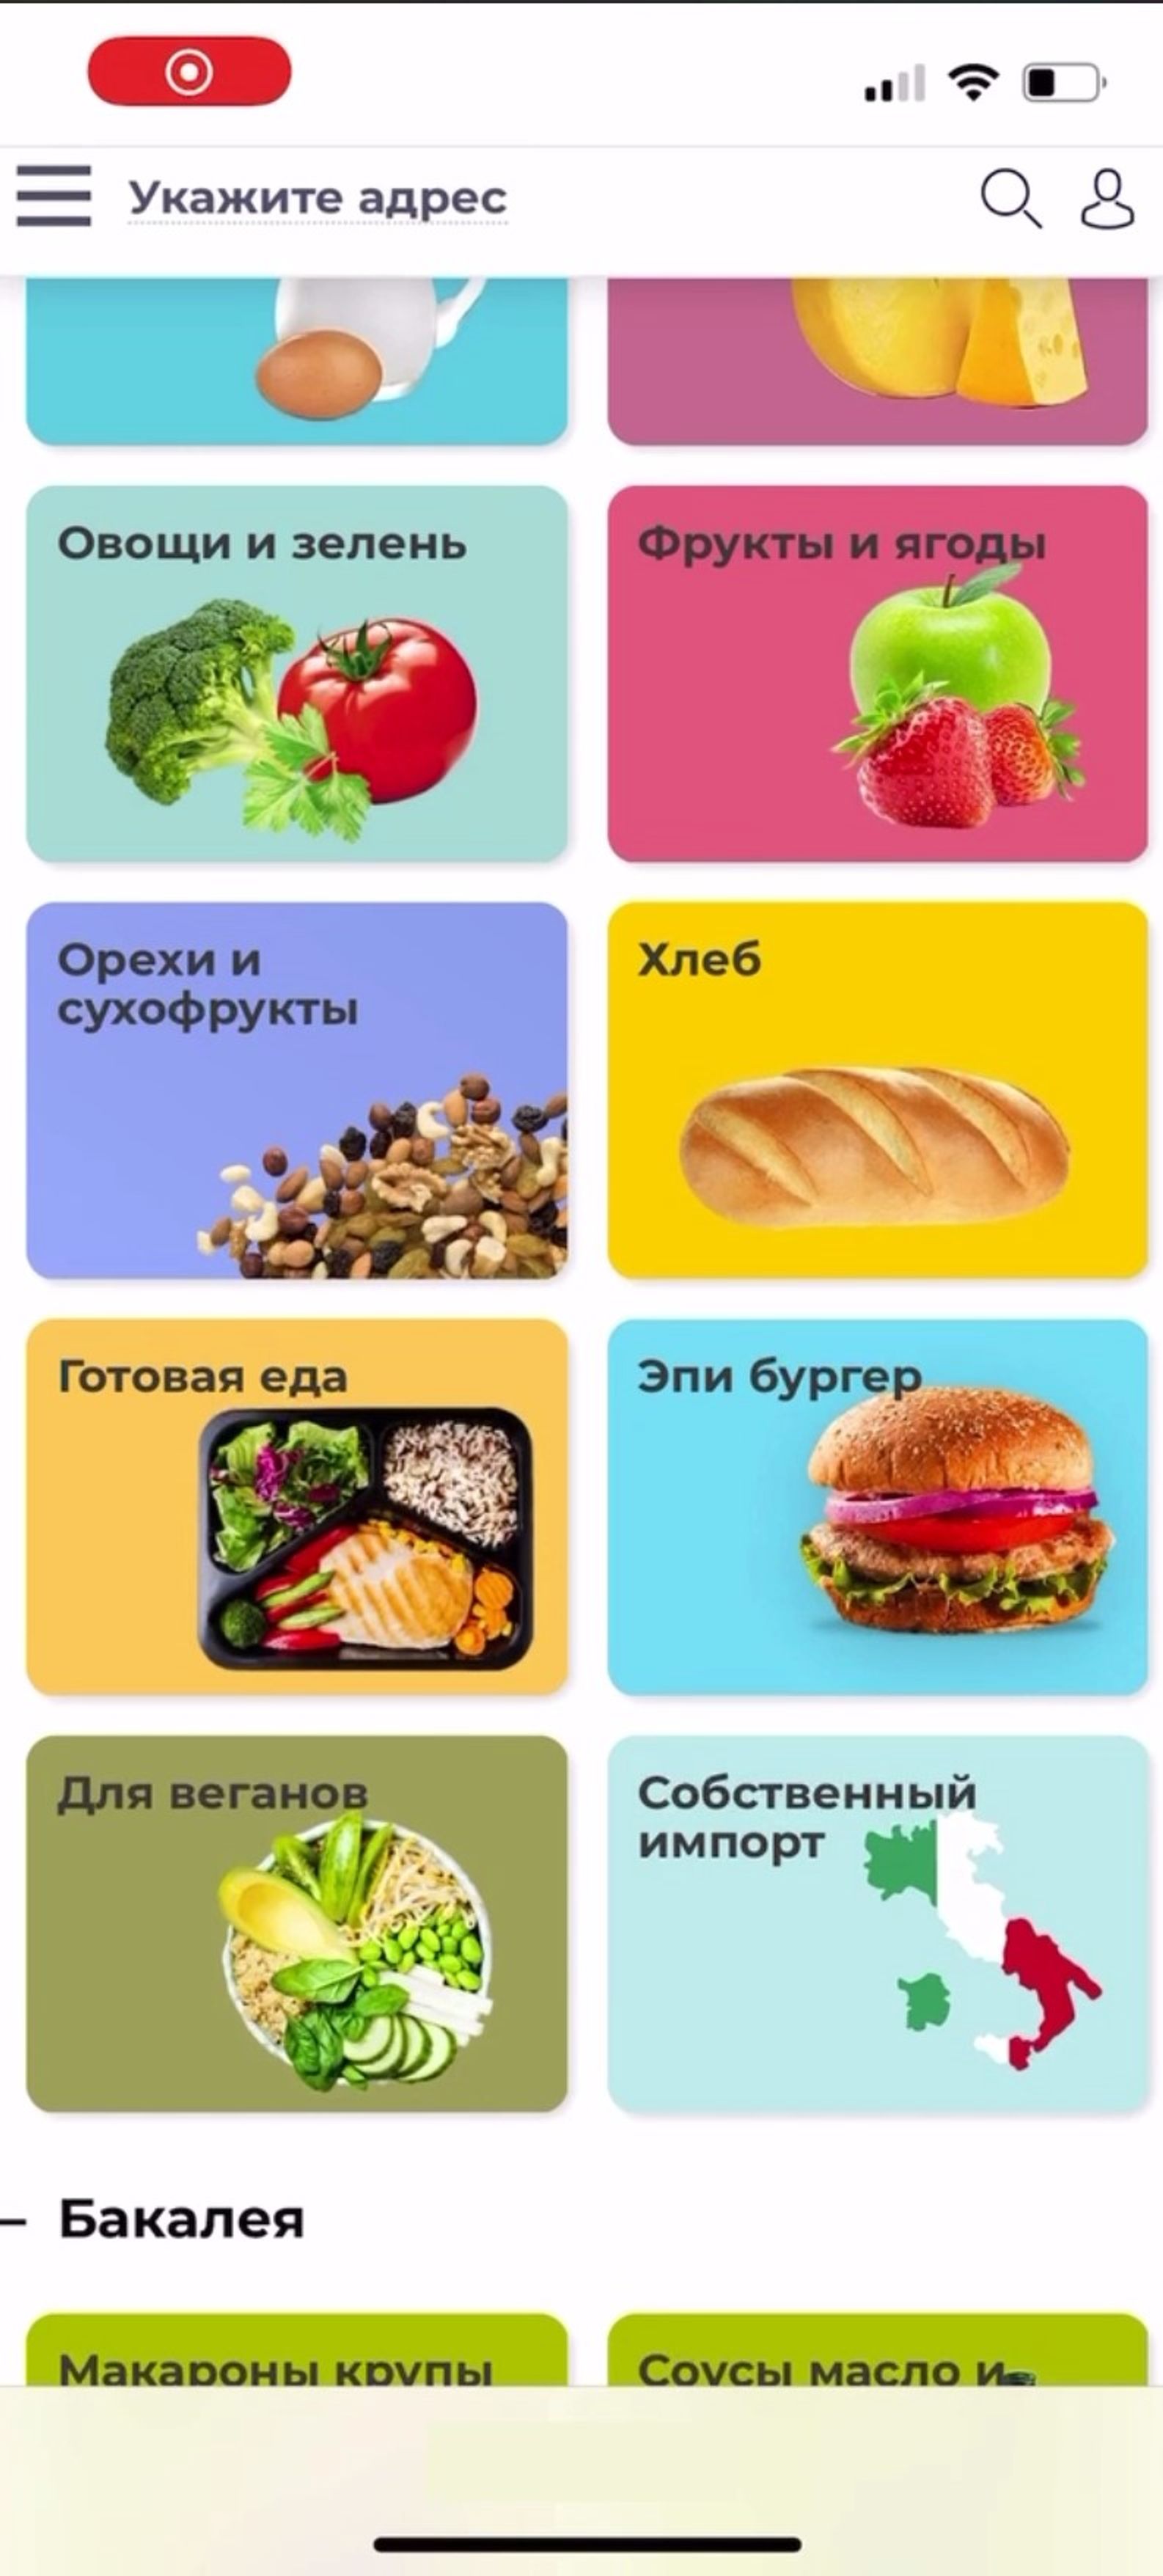 Фейк «Украины.ру»: в Украине из-за дефицита хлеба стали продавать «хлебный продукт»